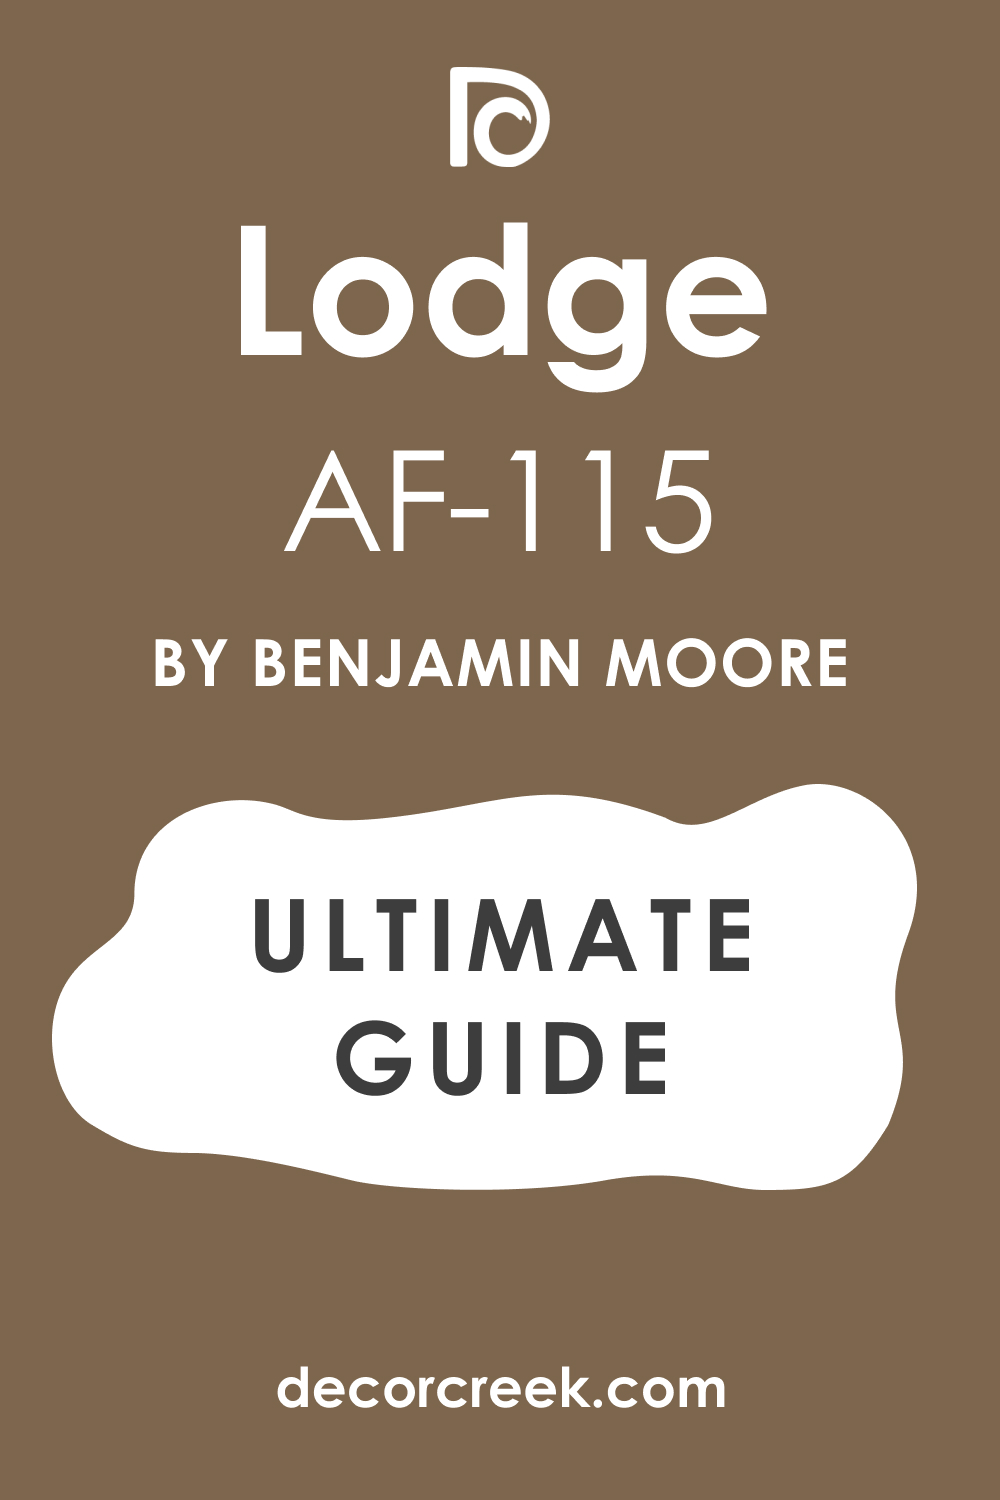 Ultimate Guide of Lodge AF-115 